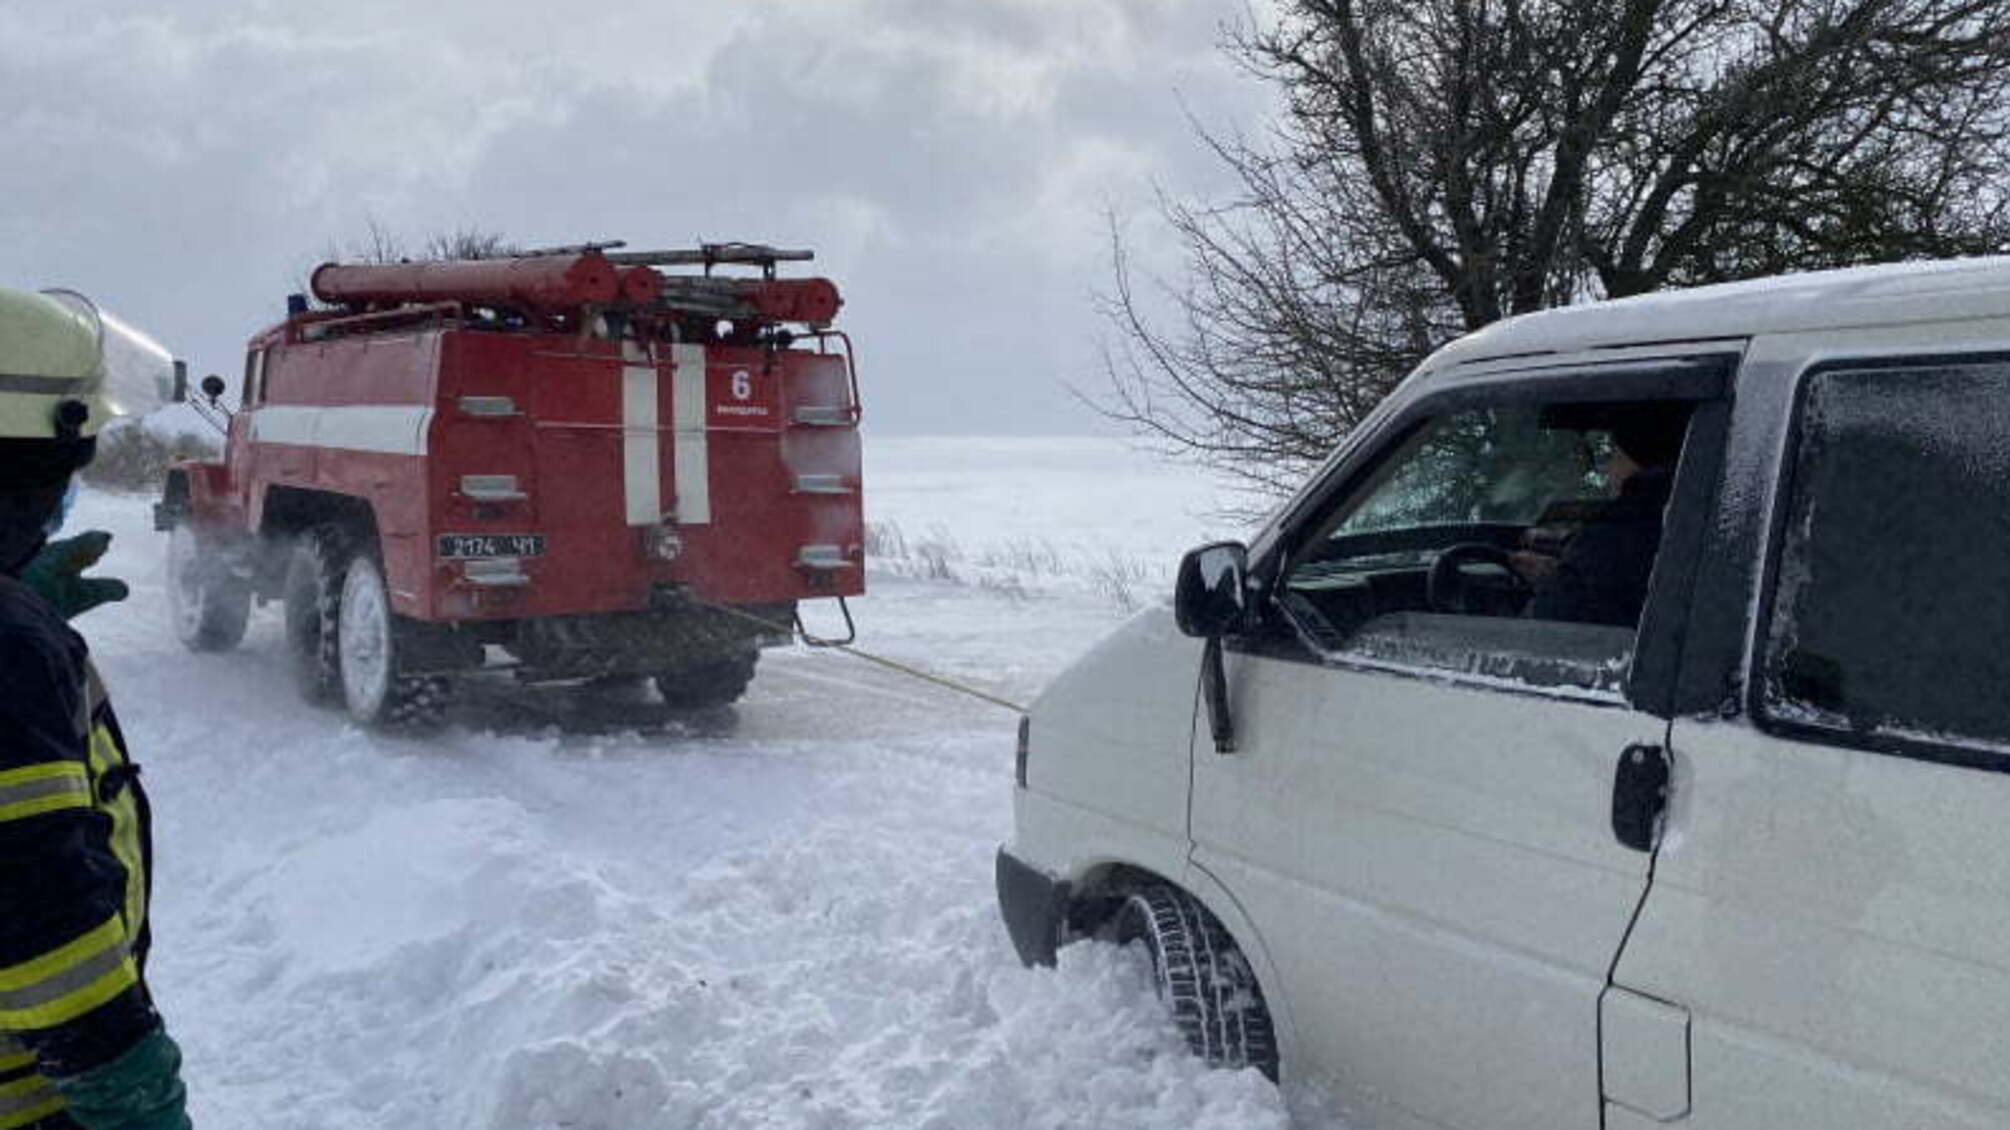 Київська область: із снігового полону рятувальники звільнили 5 авто, всередині яких були люди похилого віку, діти та вагітна жінка, і отримали публікацію-подяку